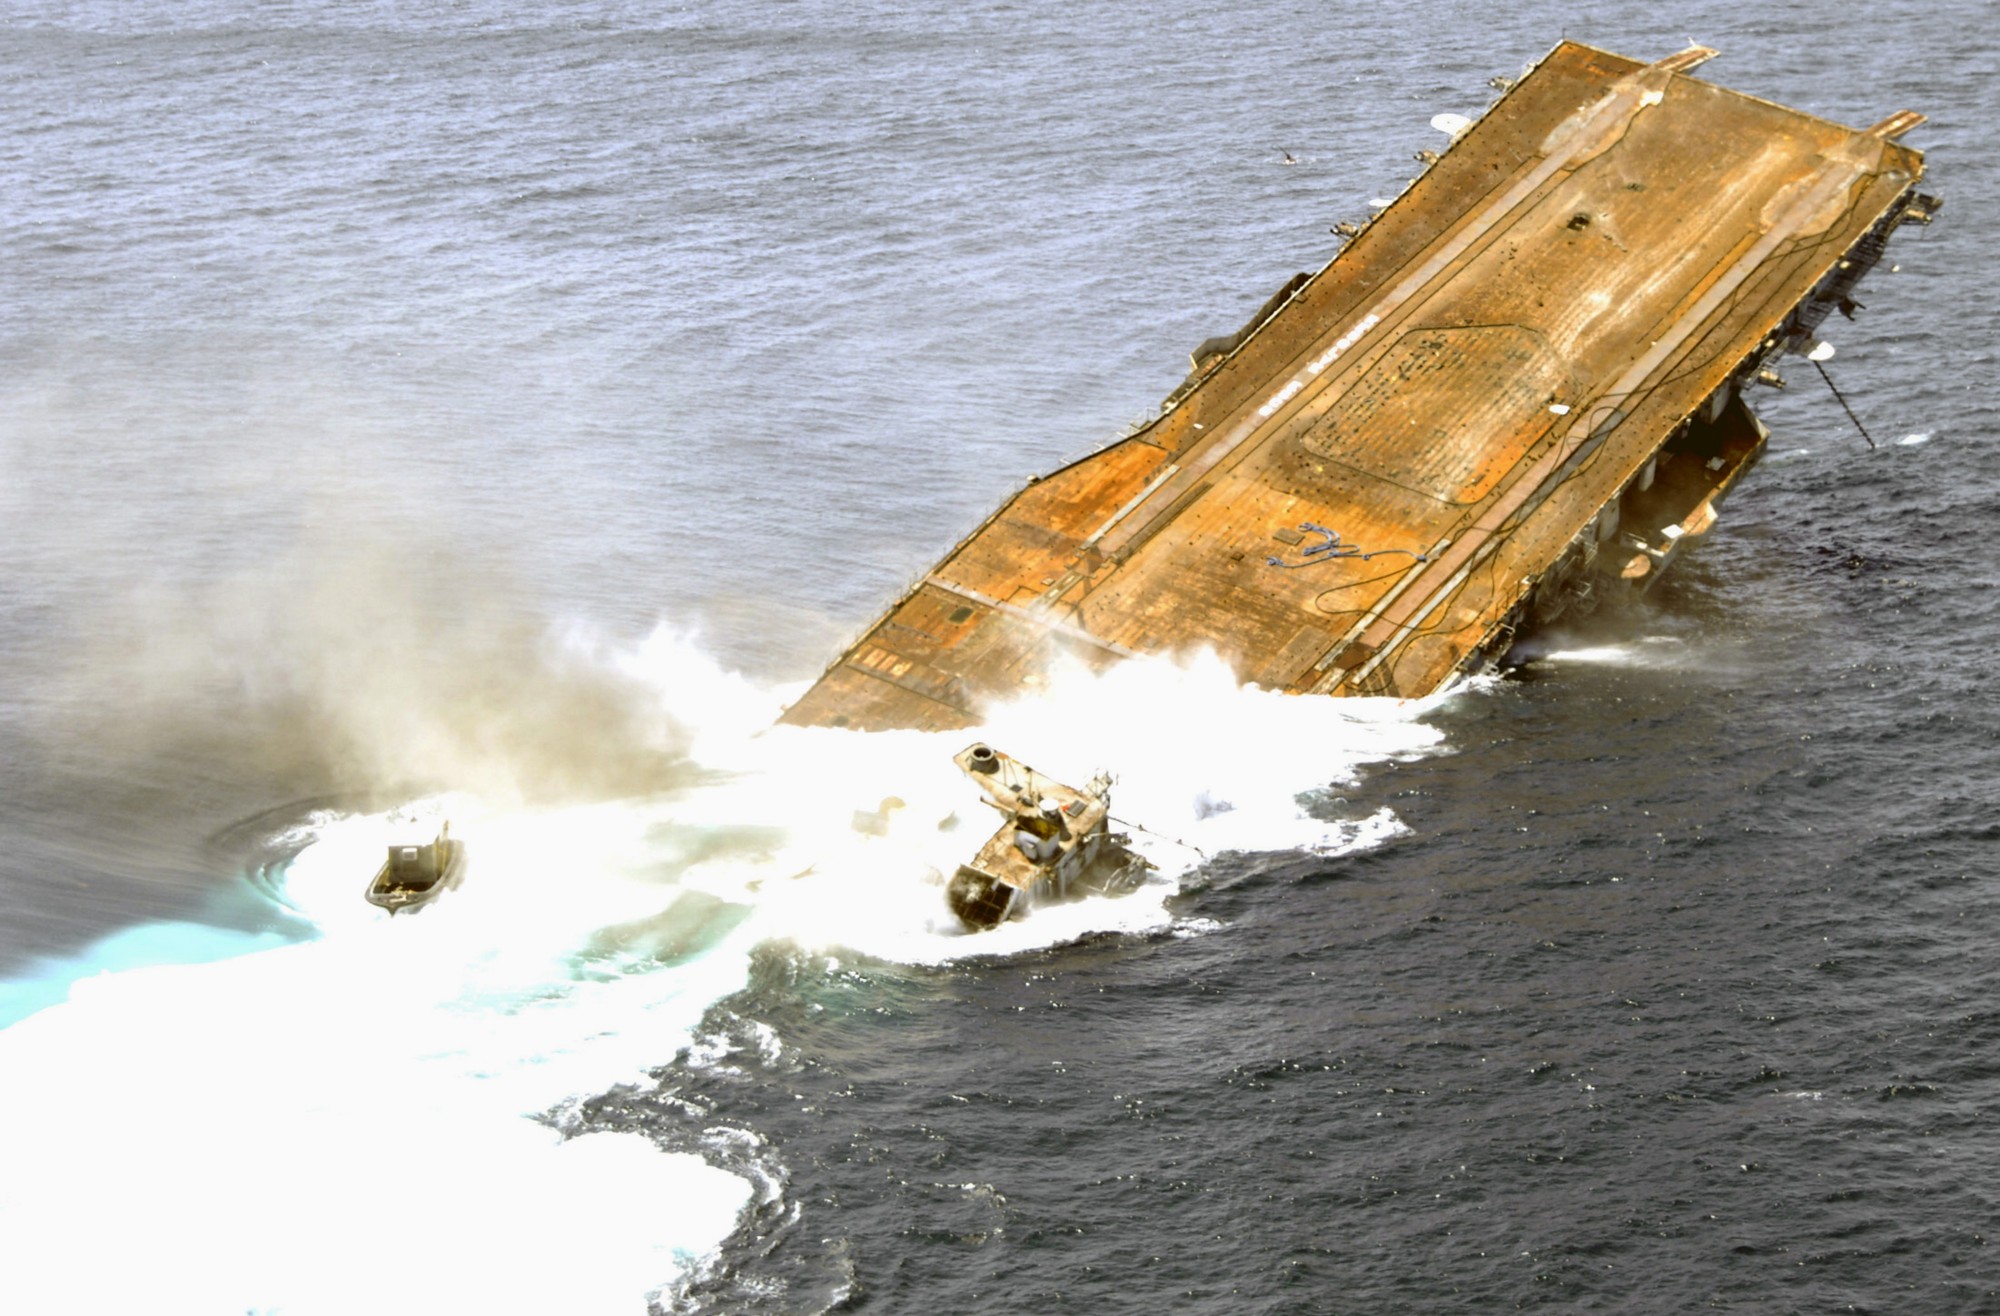 cv-34 uss oriskany essex class aircraft carrier us navy sinking artificial reef off florida 110